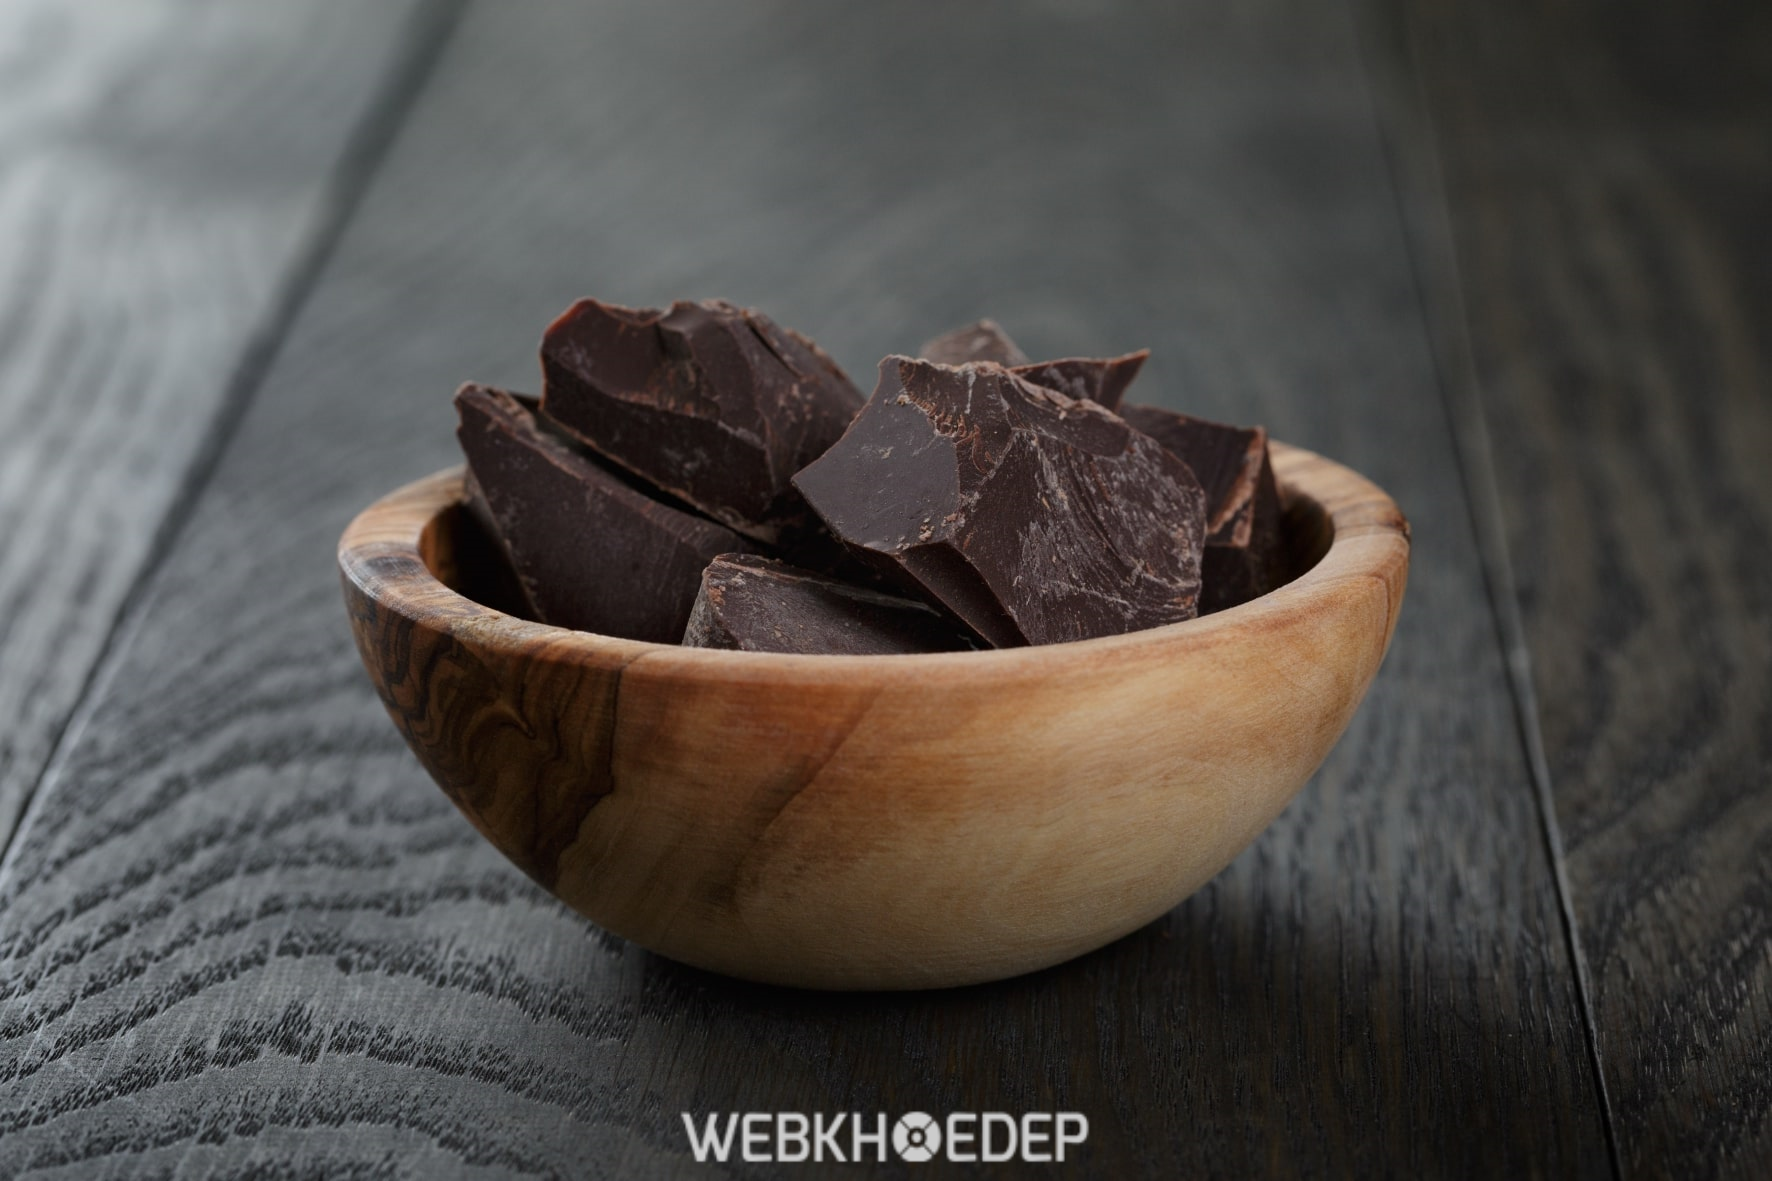 Chocolate đen giúp cải thiện tình trạng máu đông, điều chỉnh huyết áp